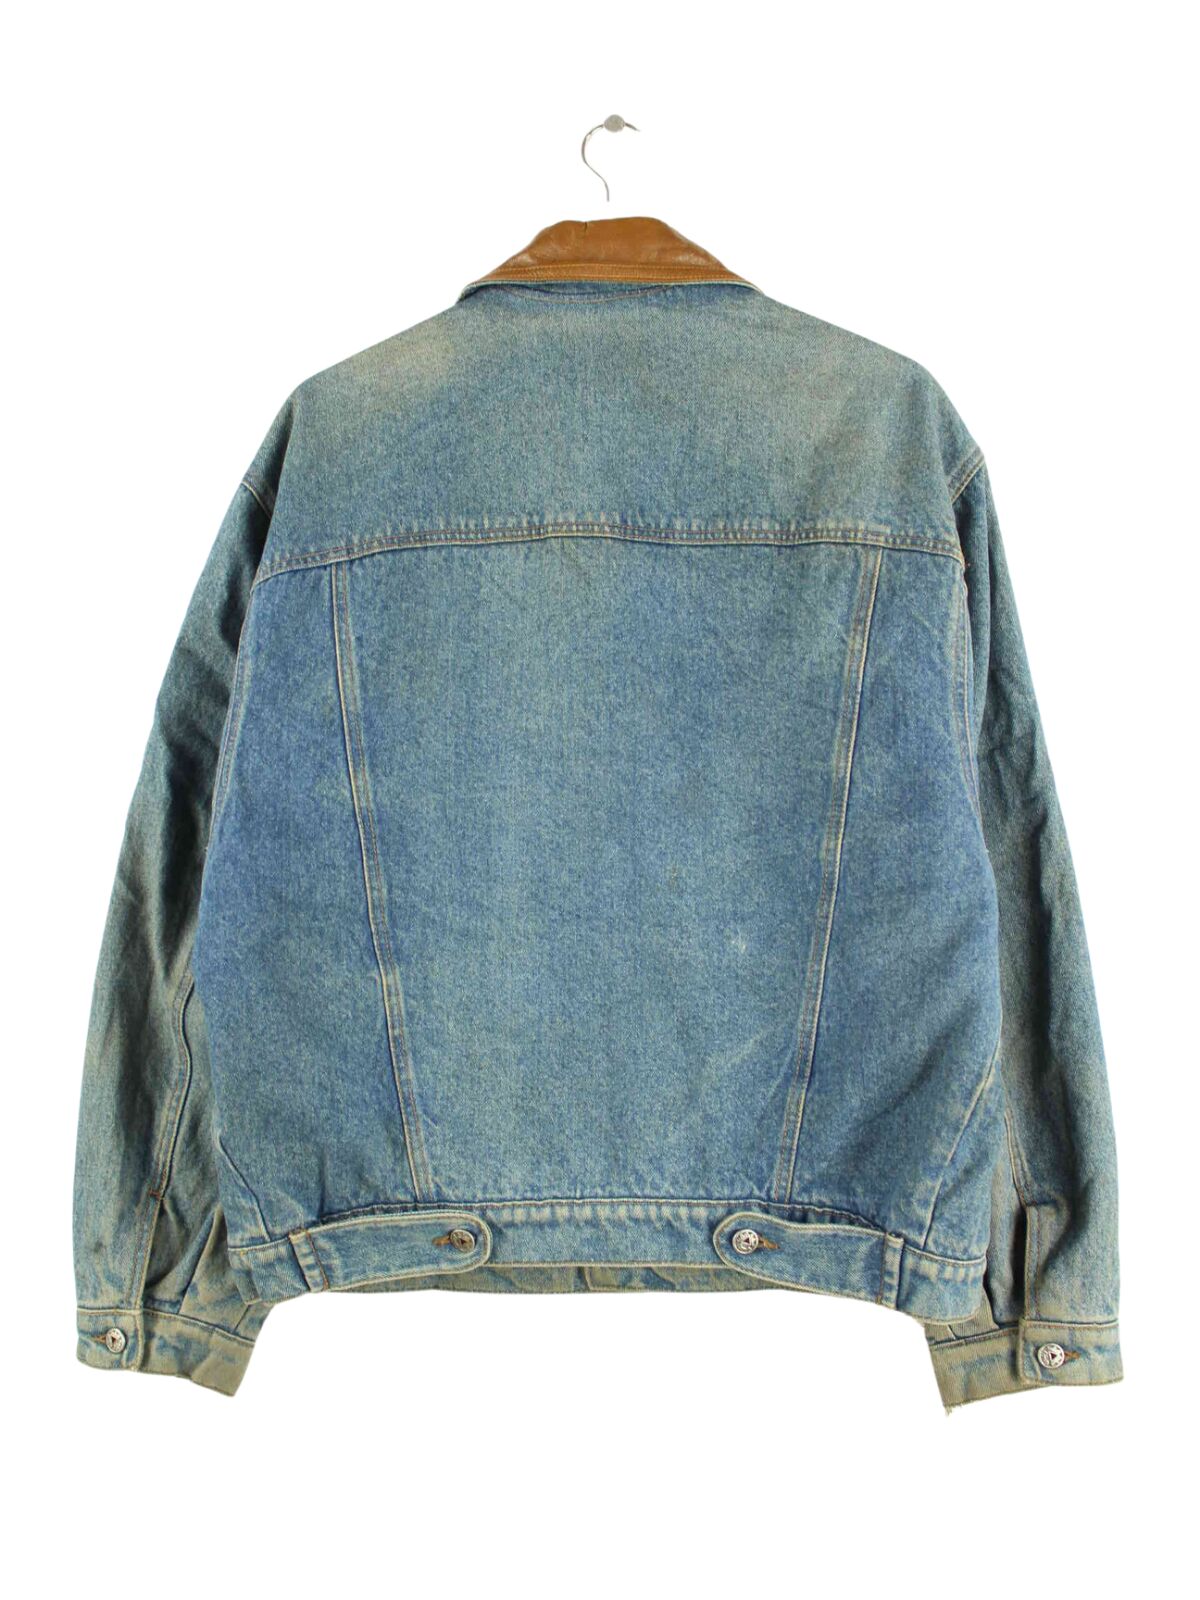 Vintage 80s Embroidered Jeans Jacke Blau L (back image)